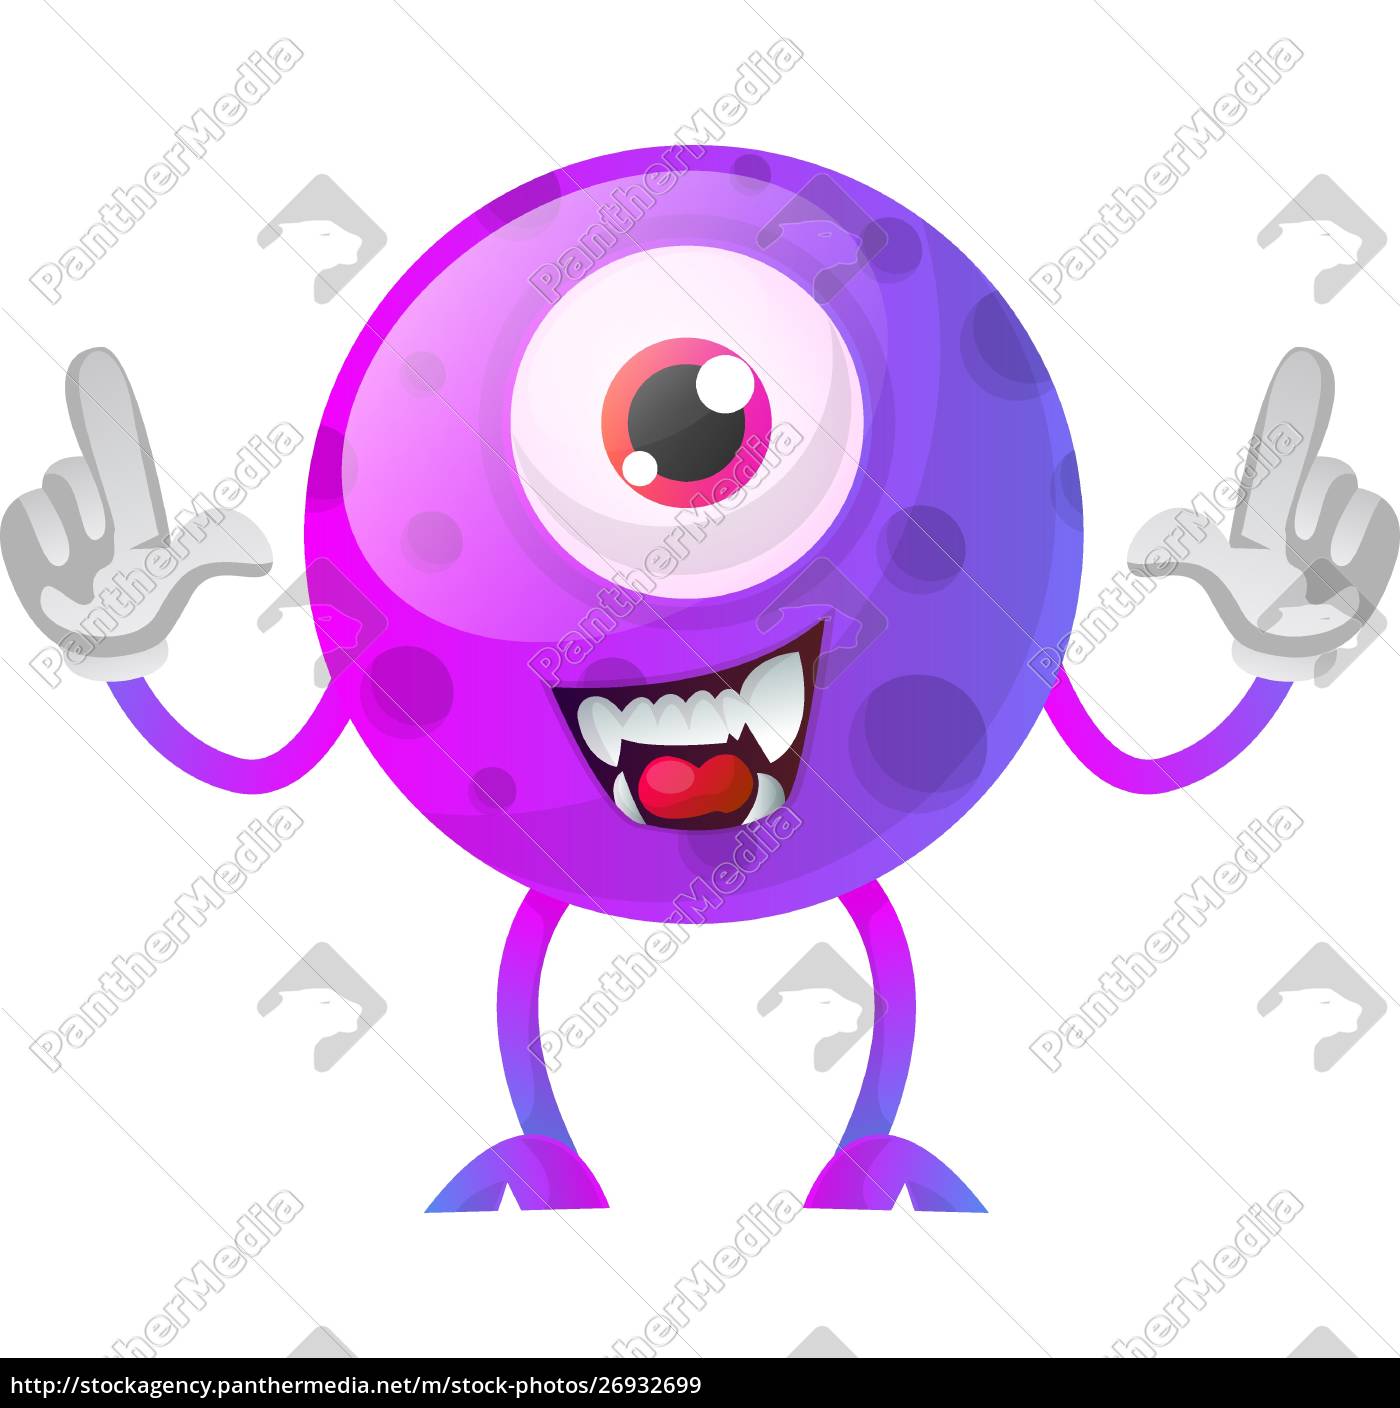 Personagem de desenho animado monstro alienígena roxo com dentes